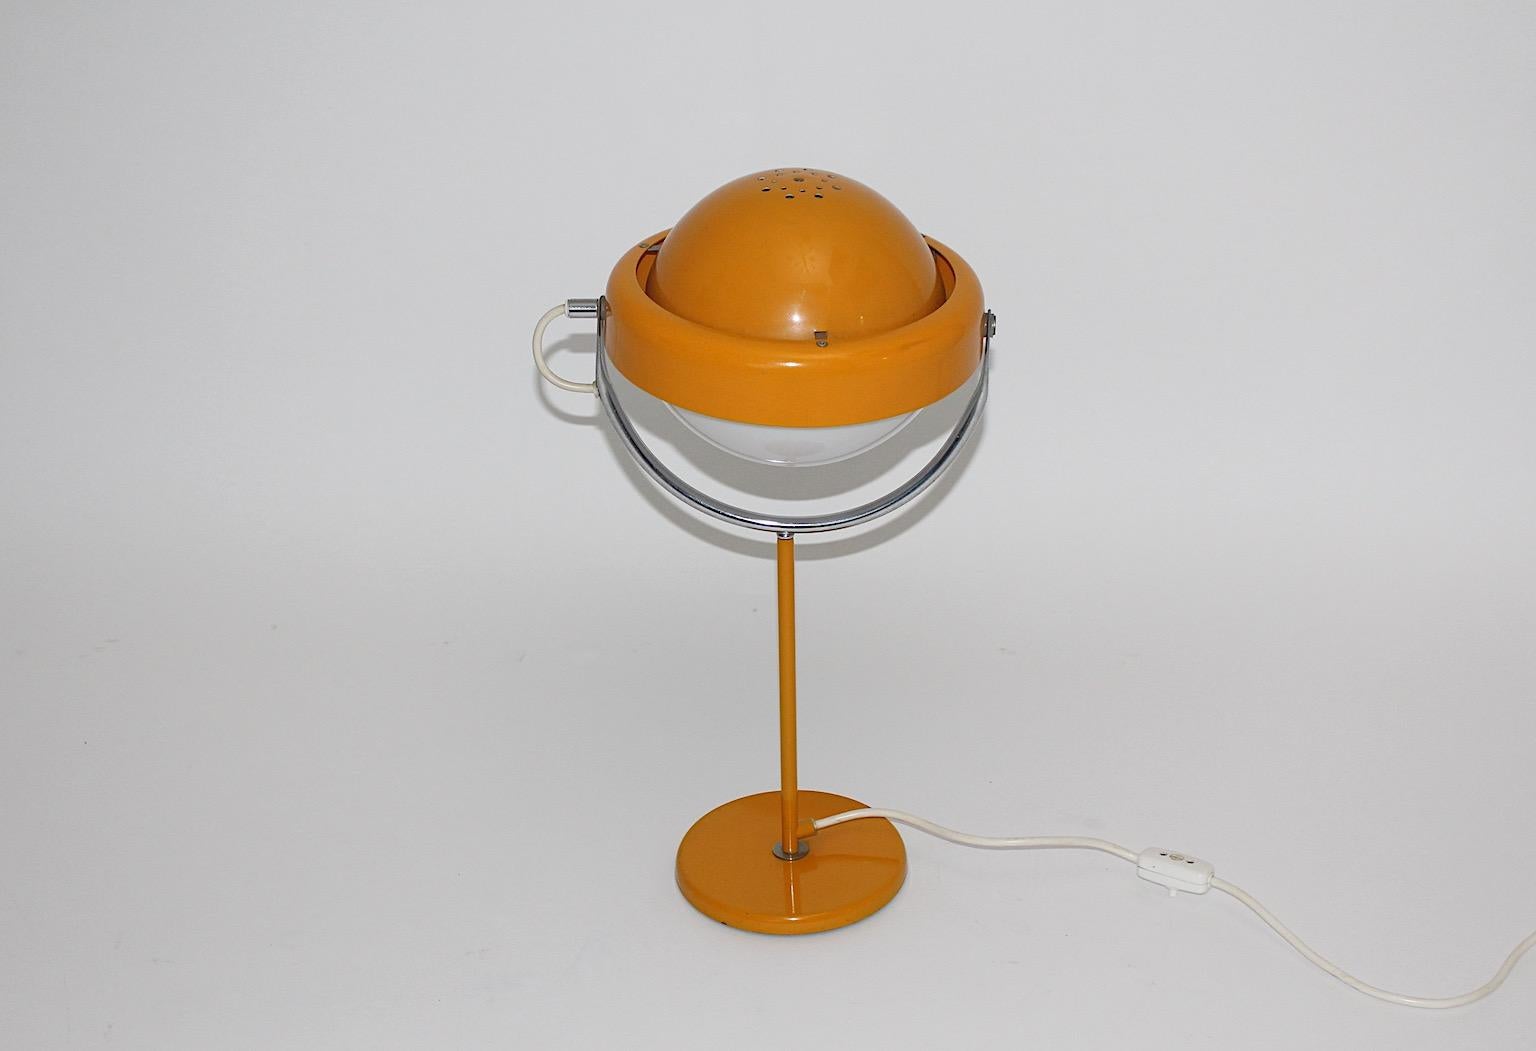 Lampe de table vintage orange ou jaune Space Age en métal par Uno Dahlen
pour Aneta 1960s Sweden.
Une lampe de table joyeuse et puissante dans une belle couleur jaune foncé ou orange doux avec un abat-jour réglable.
Étiqueté en dessous avec le